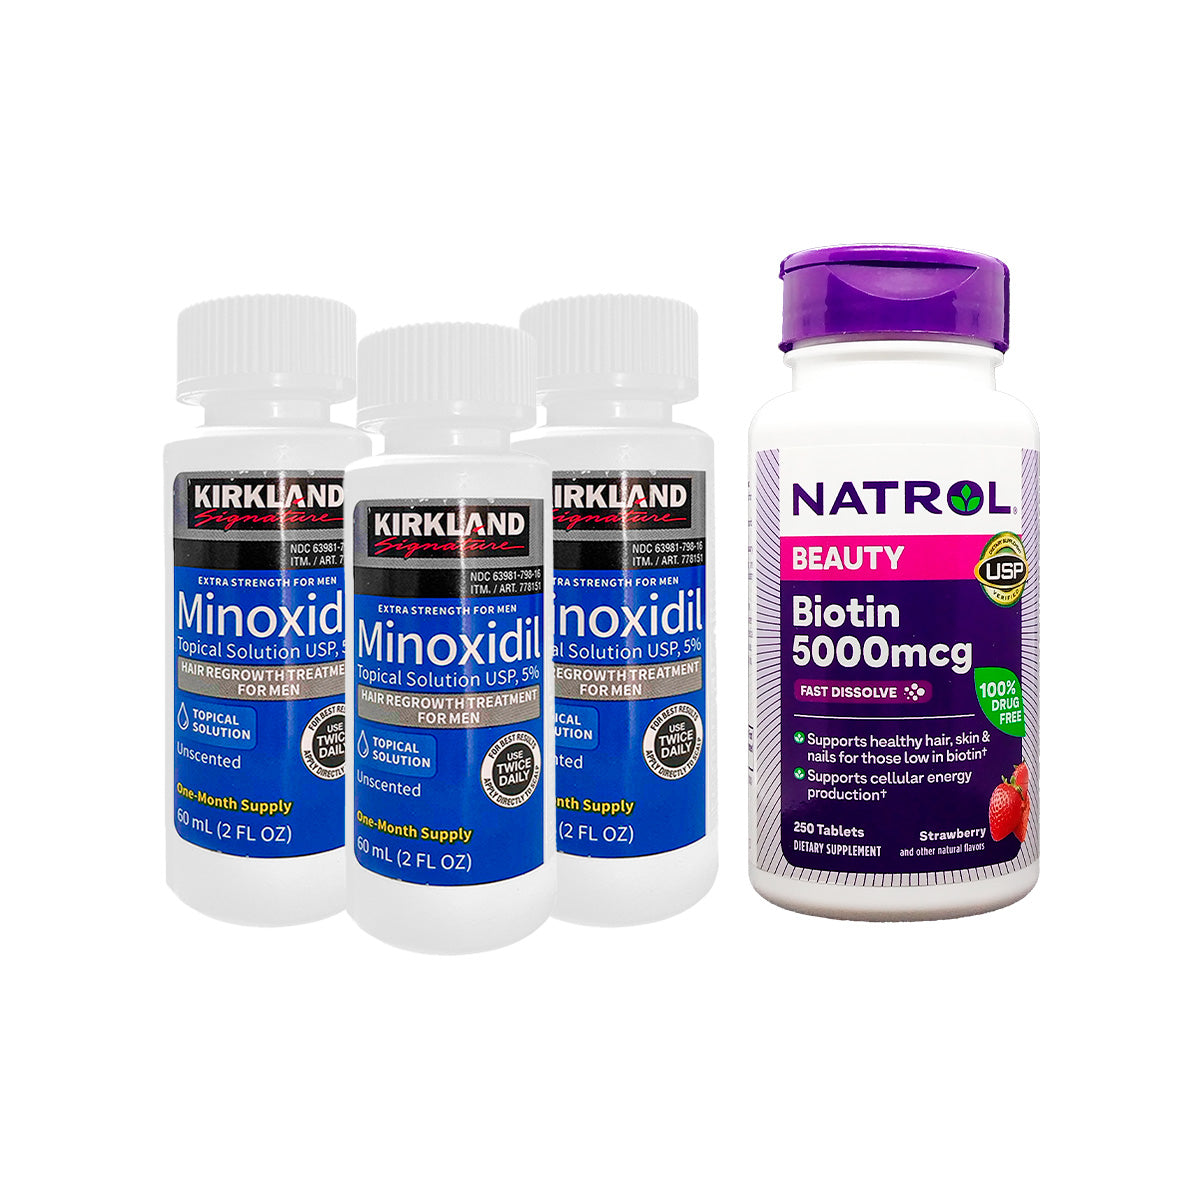 Minoxidil liquido kirkland + Biotina Natrol Beauty 5,000 mcg